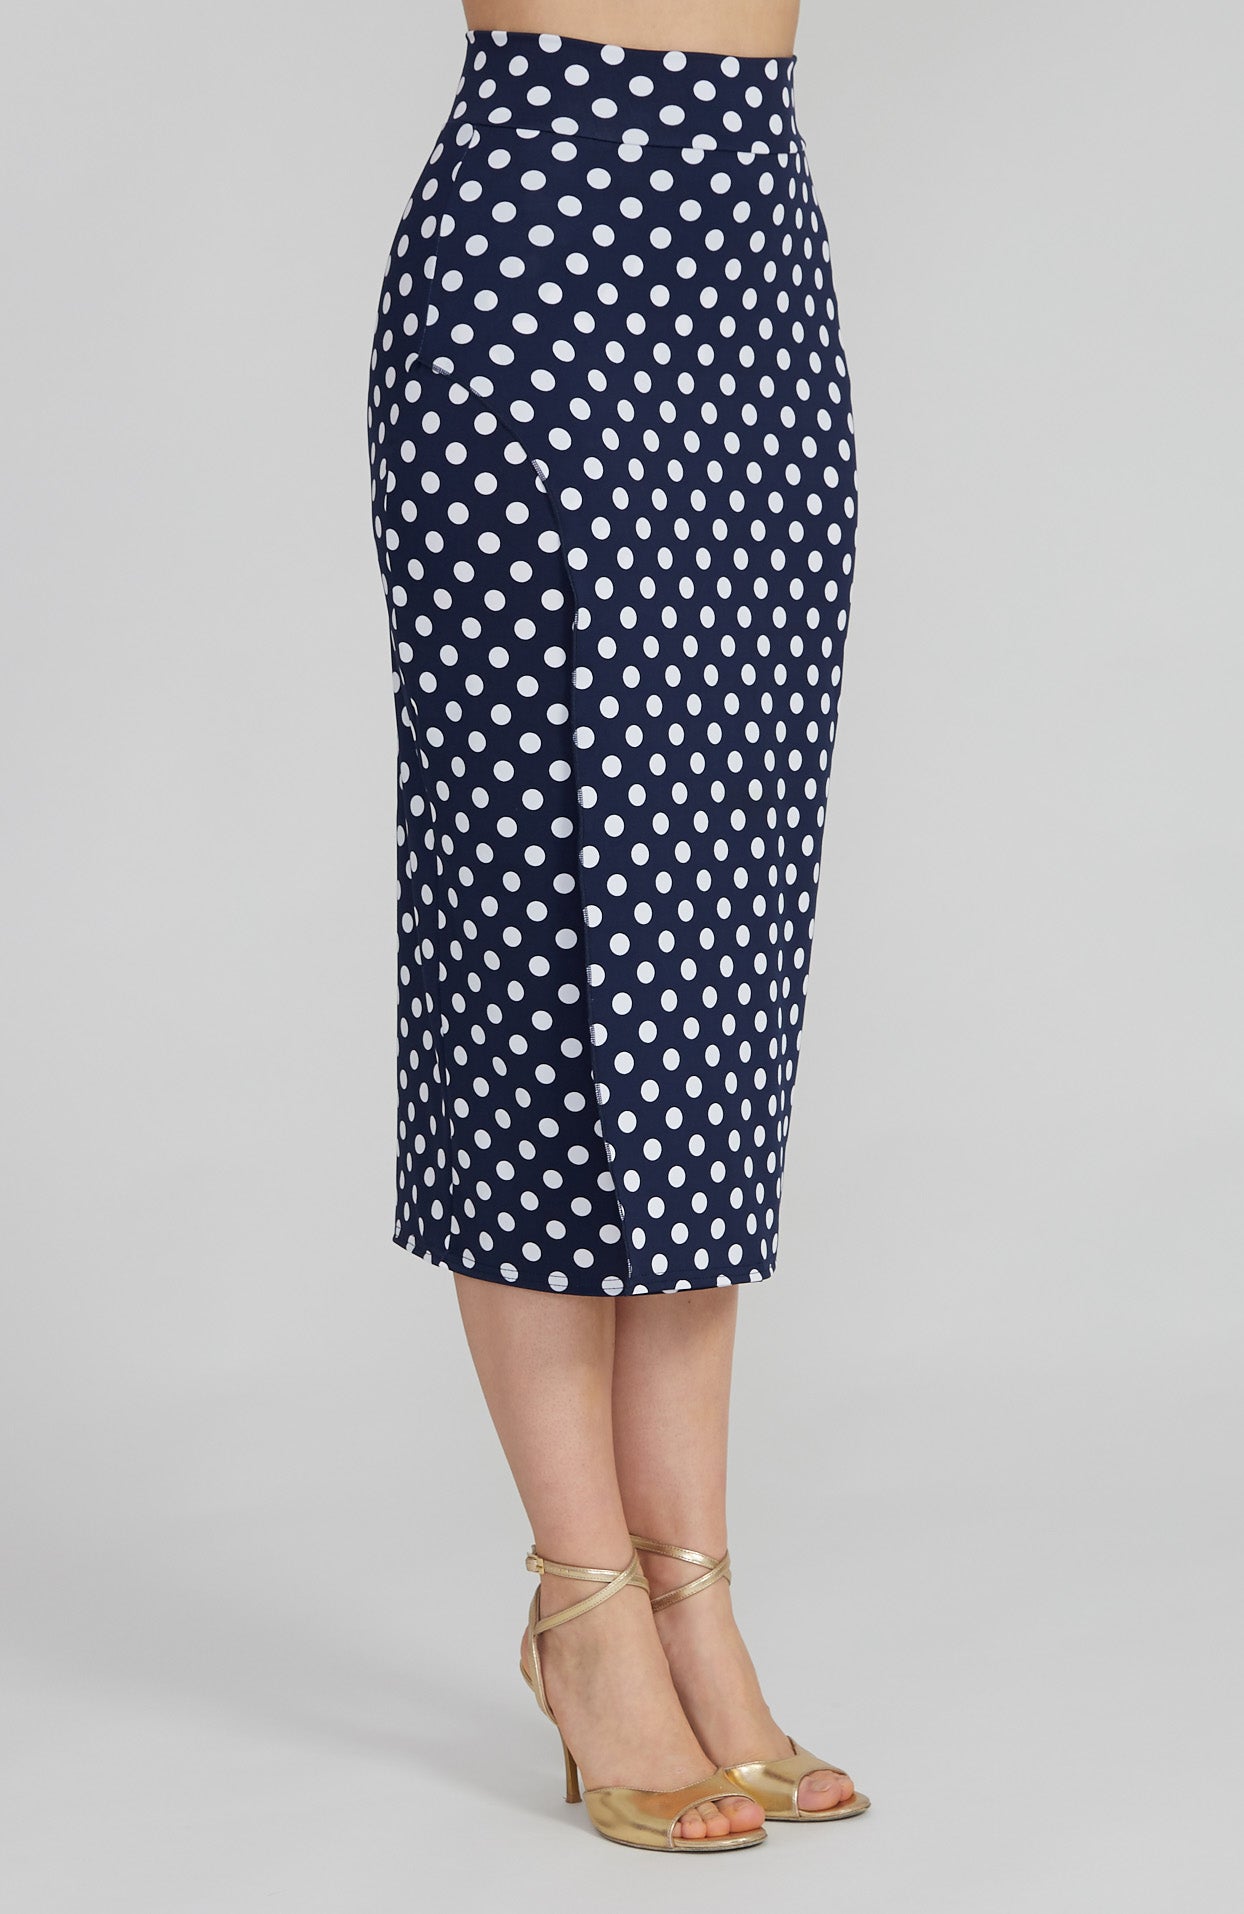 VALERY - Polka Dot Tango Skirt with Overlap in Navy Blue & White